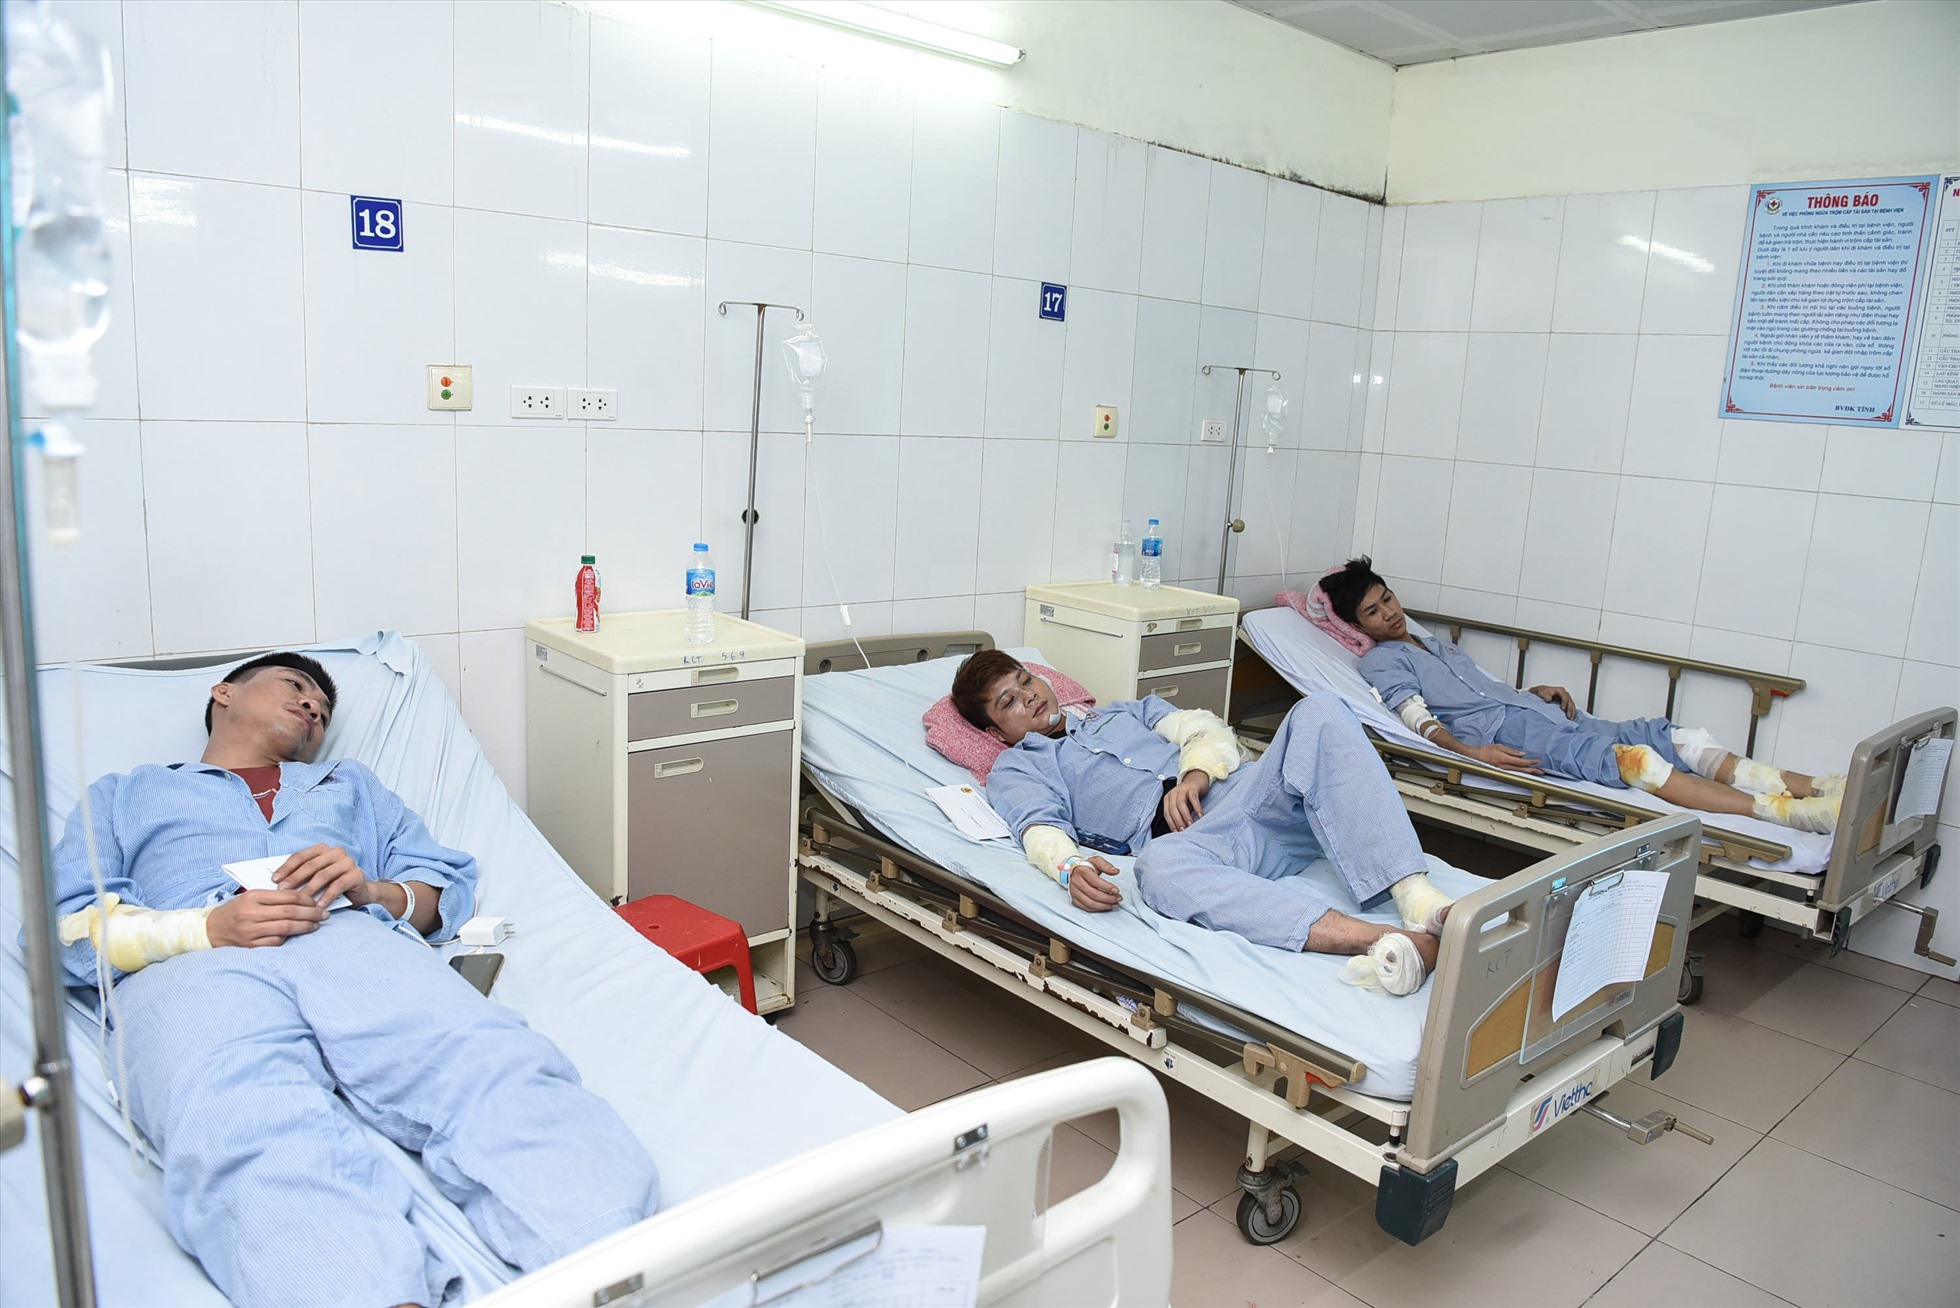 13 trường hợp công nhân bị thương trong vụ nổ sáng 30.8 tại công ty Seojin Auto đang điều trị tại Bệnh viện Đa khoa tỉnh Bắc Ninh.  Ngoài ra, còn 21 trường hợp khác đang được điều trị tại Trung tâm y tế TP.Từ Sơn, bệnh viện Sản Nhi (phụ nữ mang thai) và Bệnh viện Bỏng Quốc gia (7 trường hợp nặng).